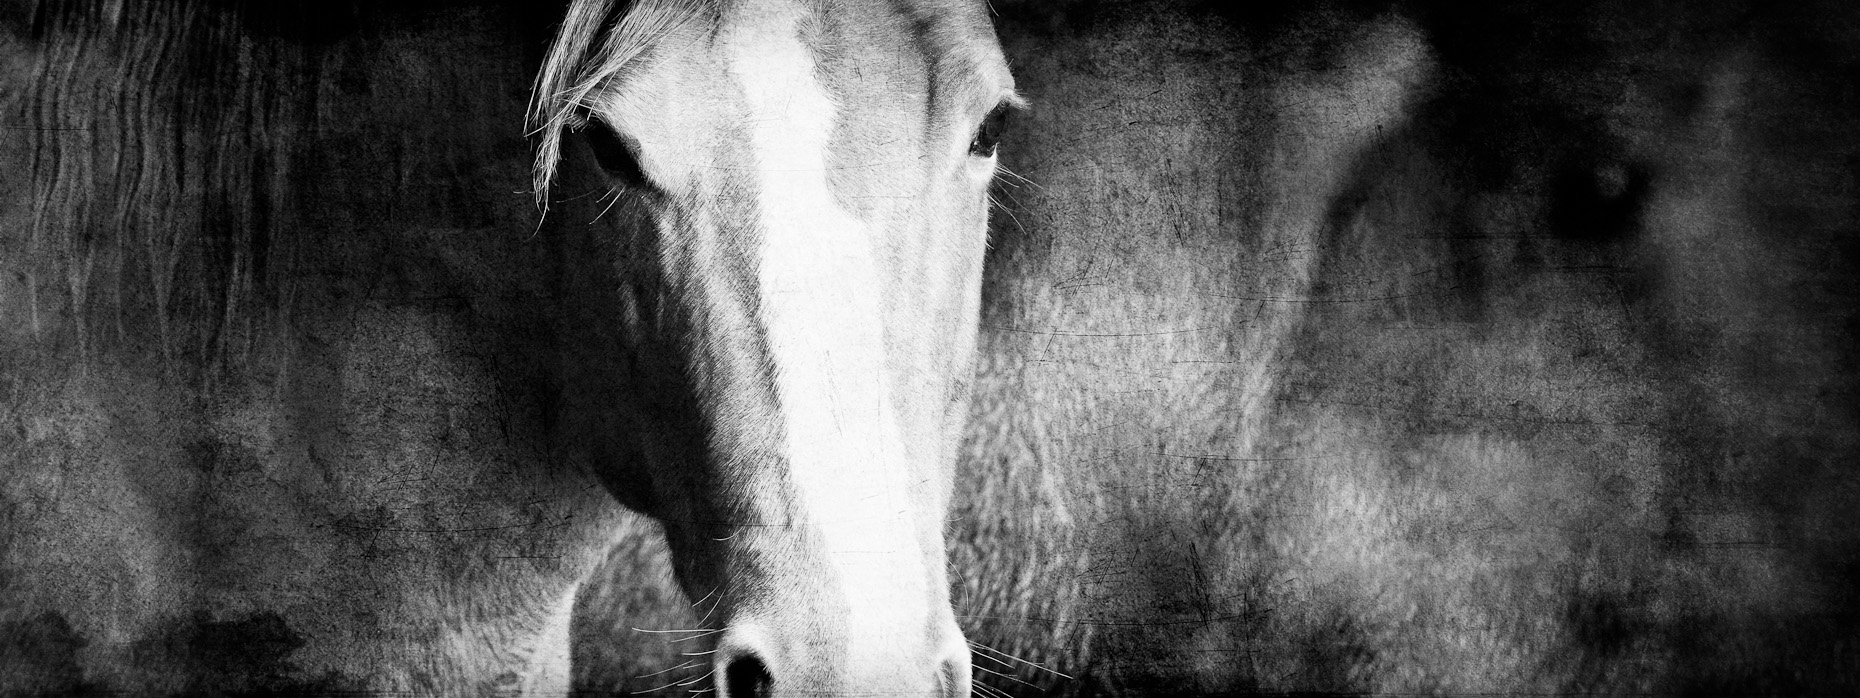 La Cense Horses-6872-Edit.jpg